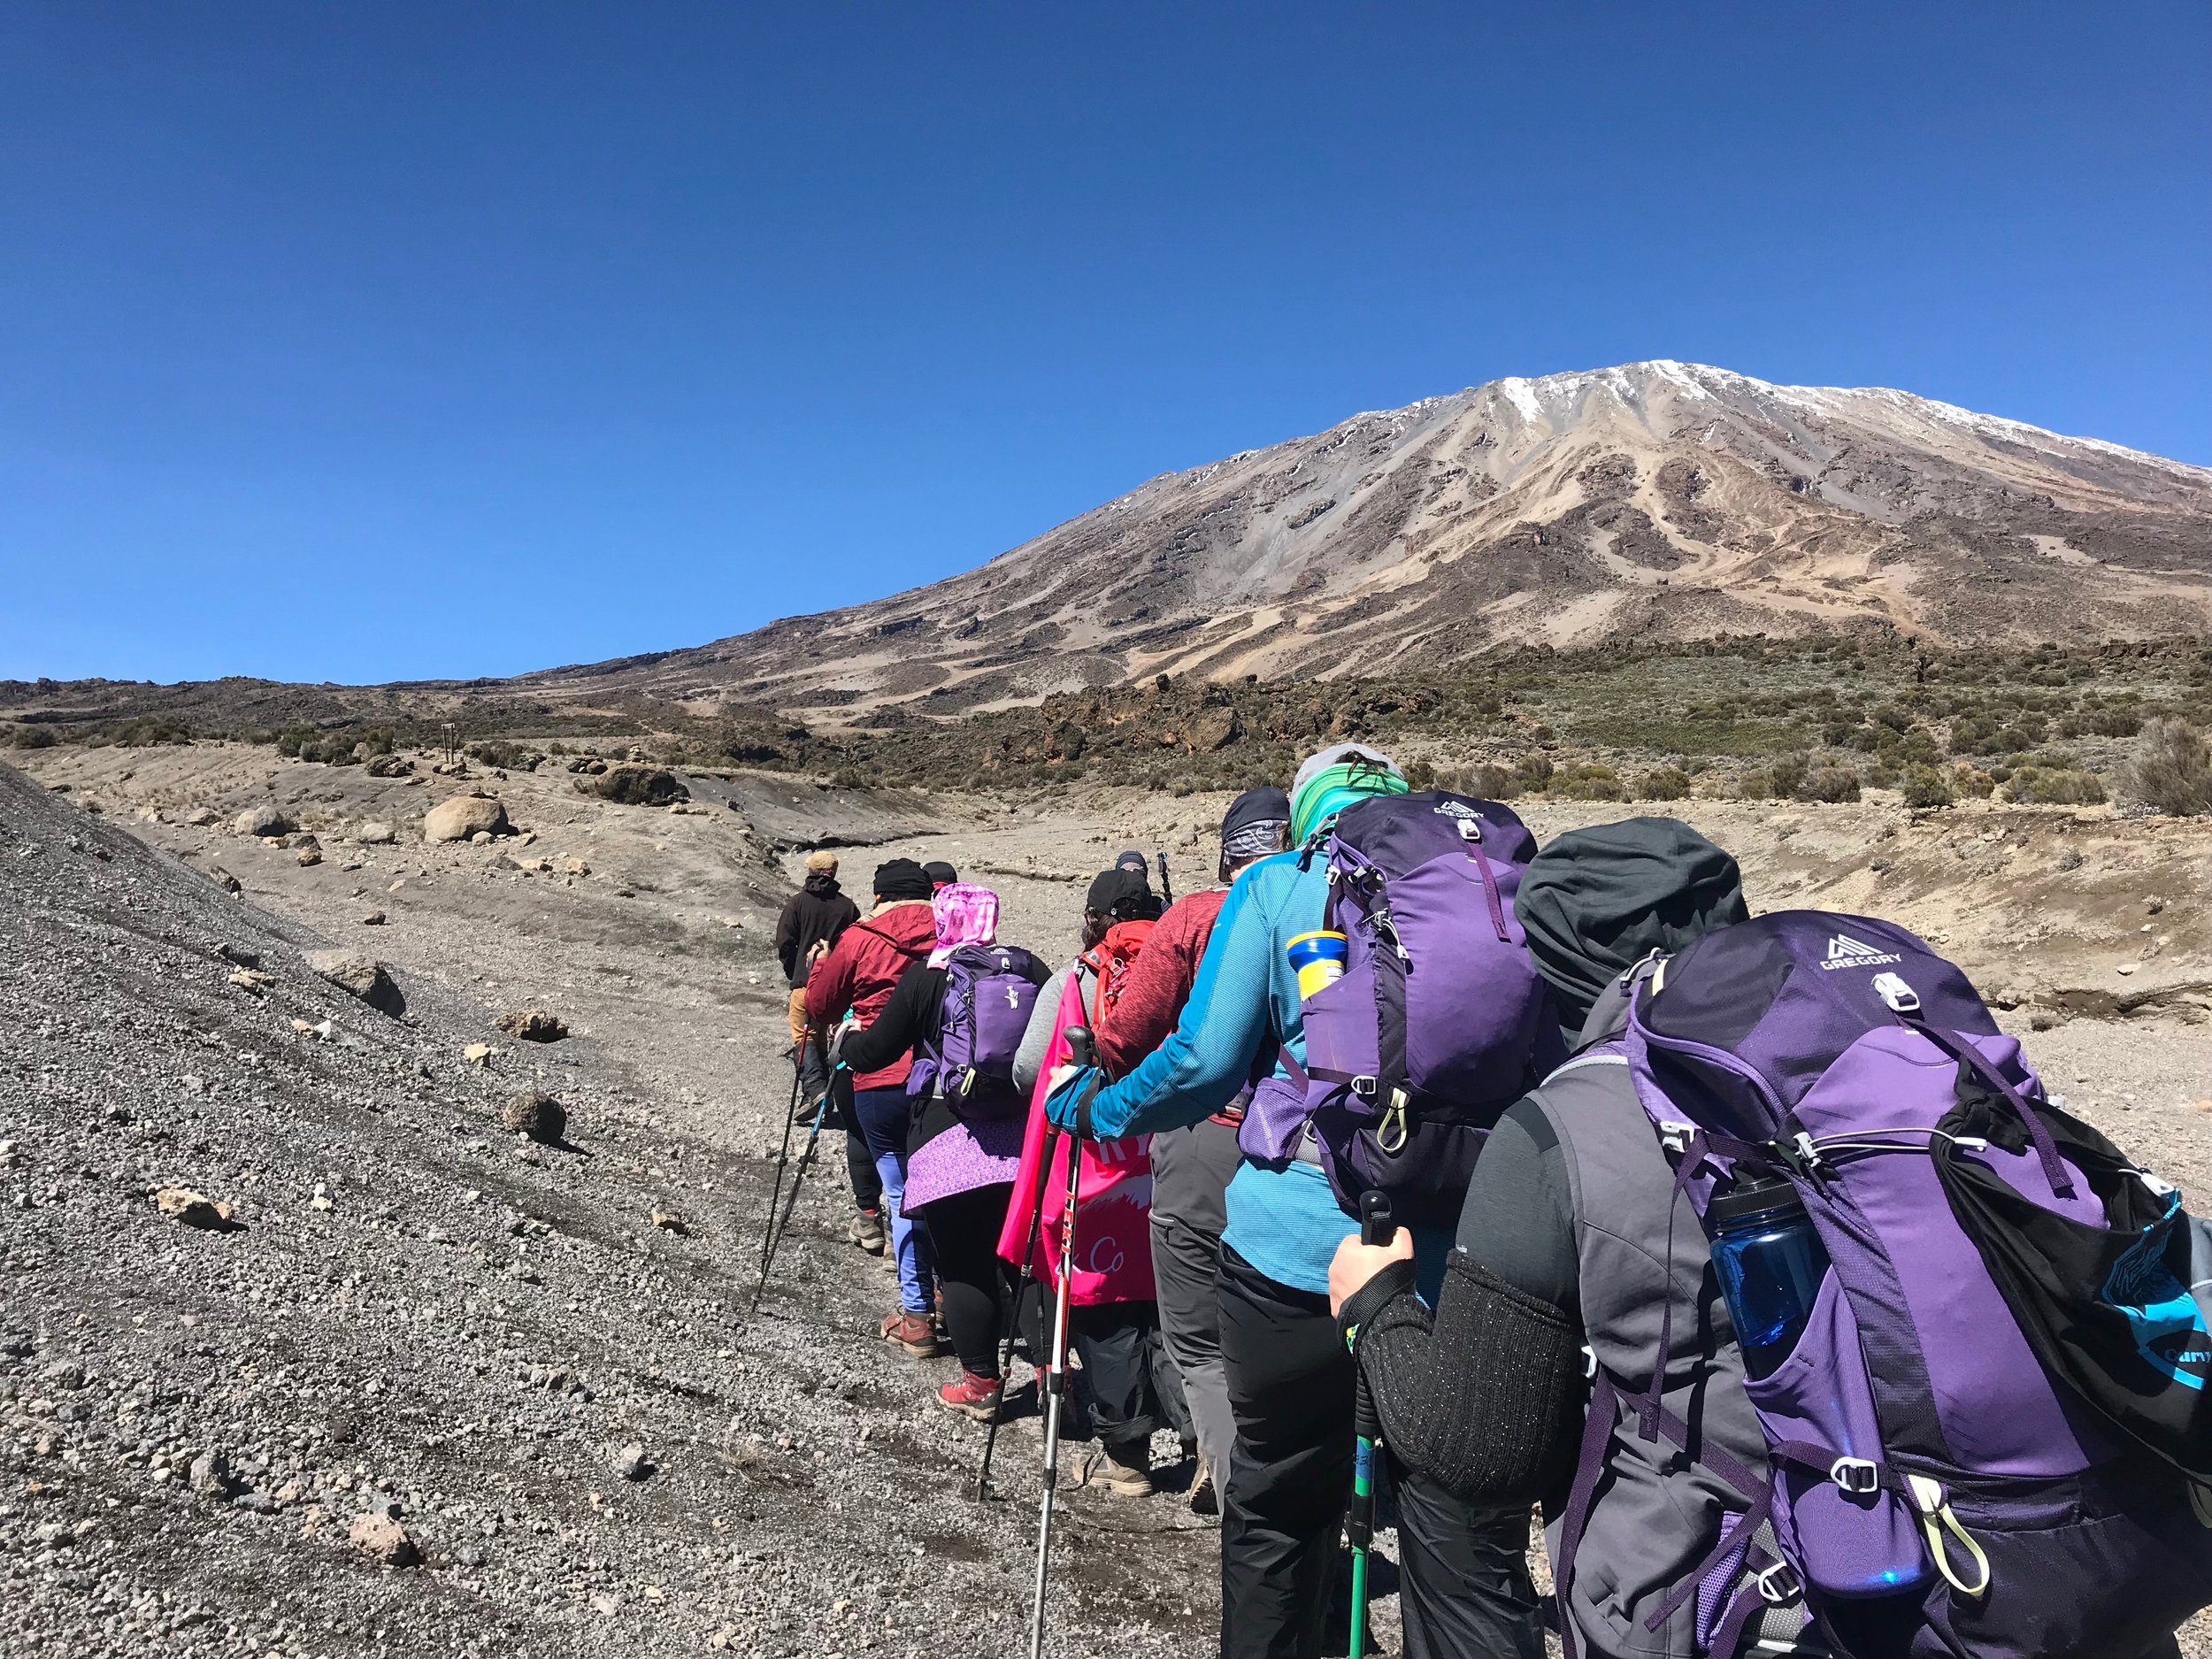  Where is Kilimanjaro 